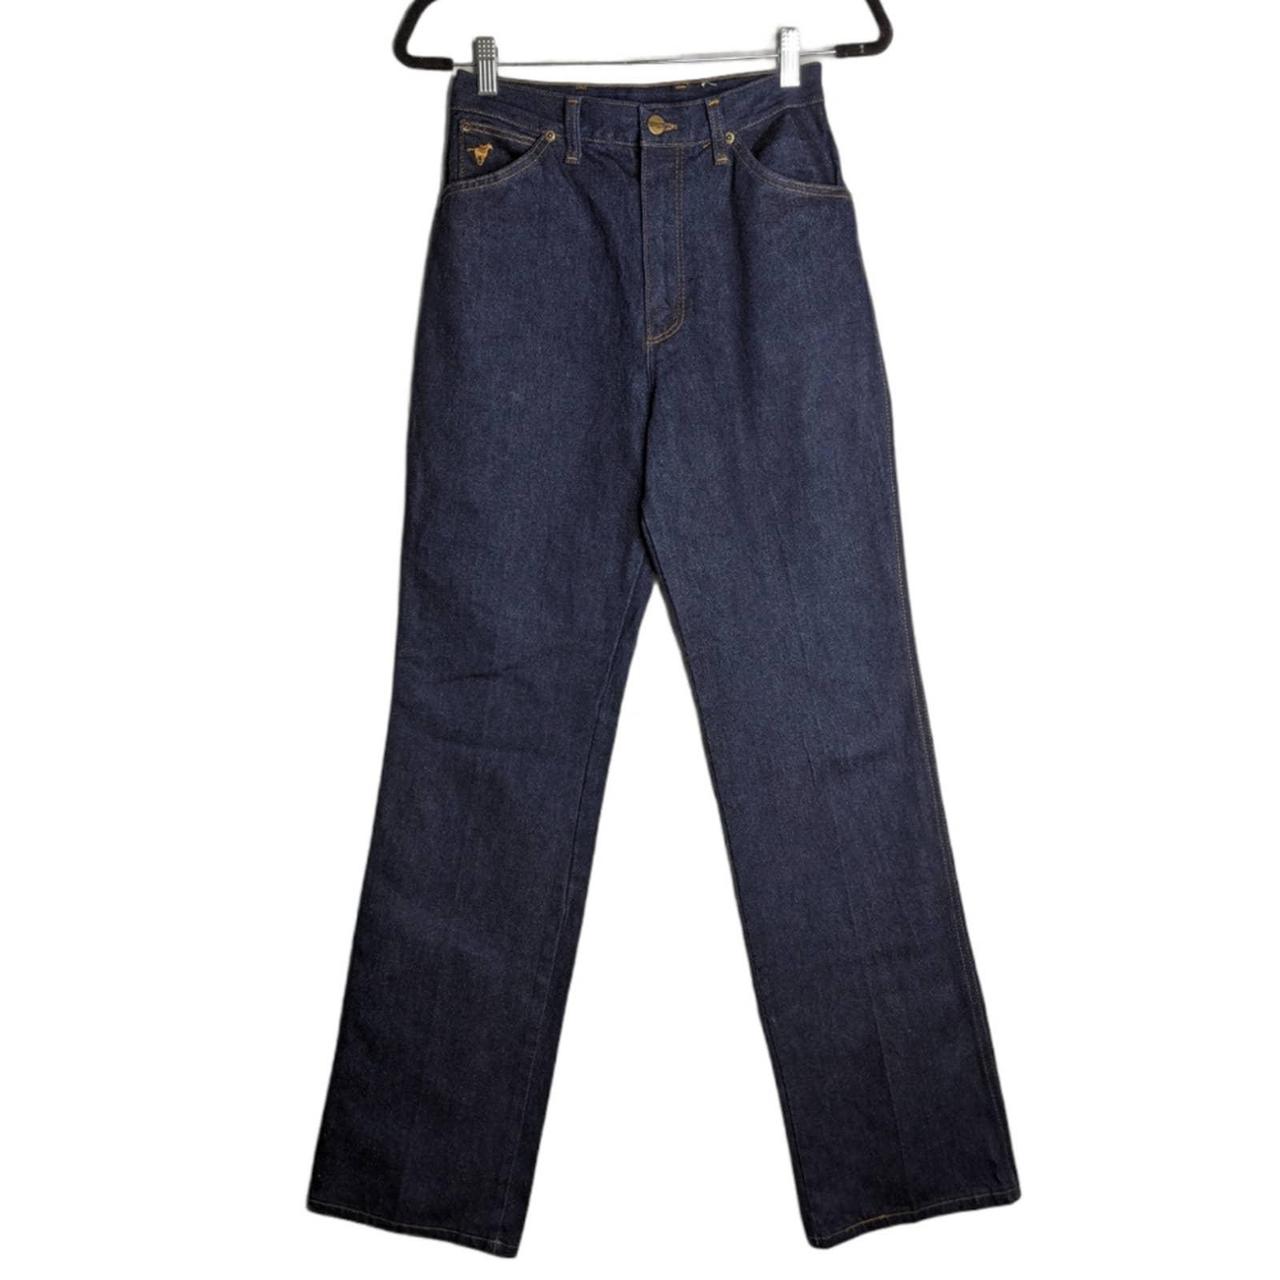 Wrangler 70's Vintage No-Fault Denim Mom Jeans Great... - Depop